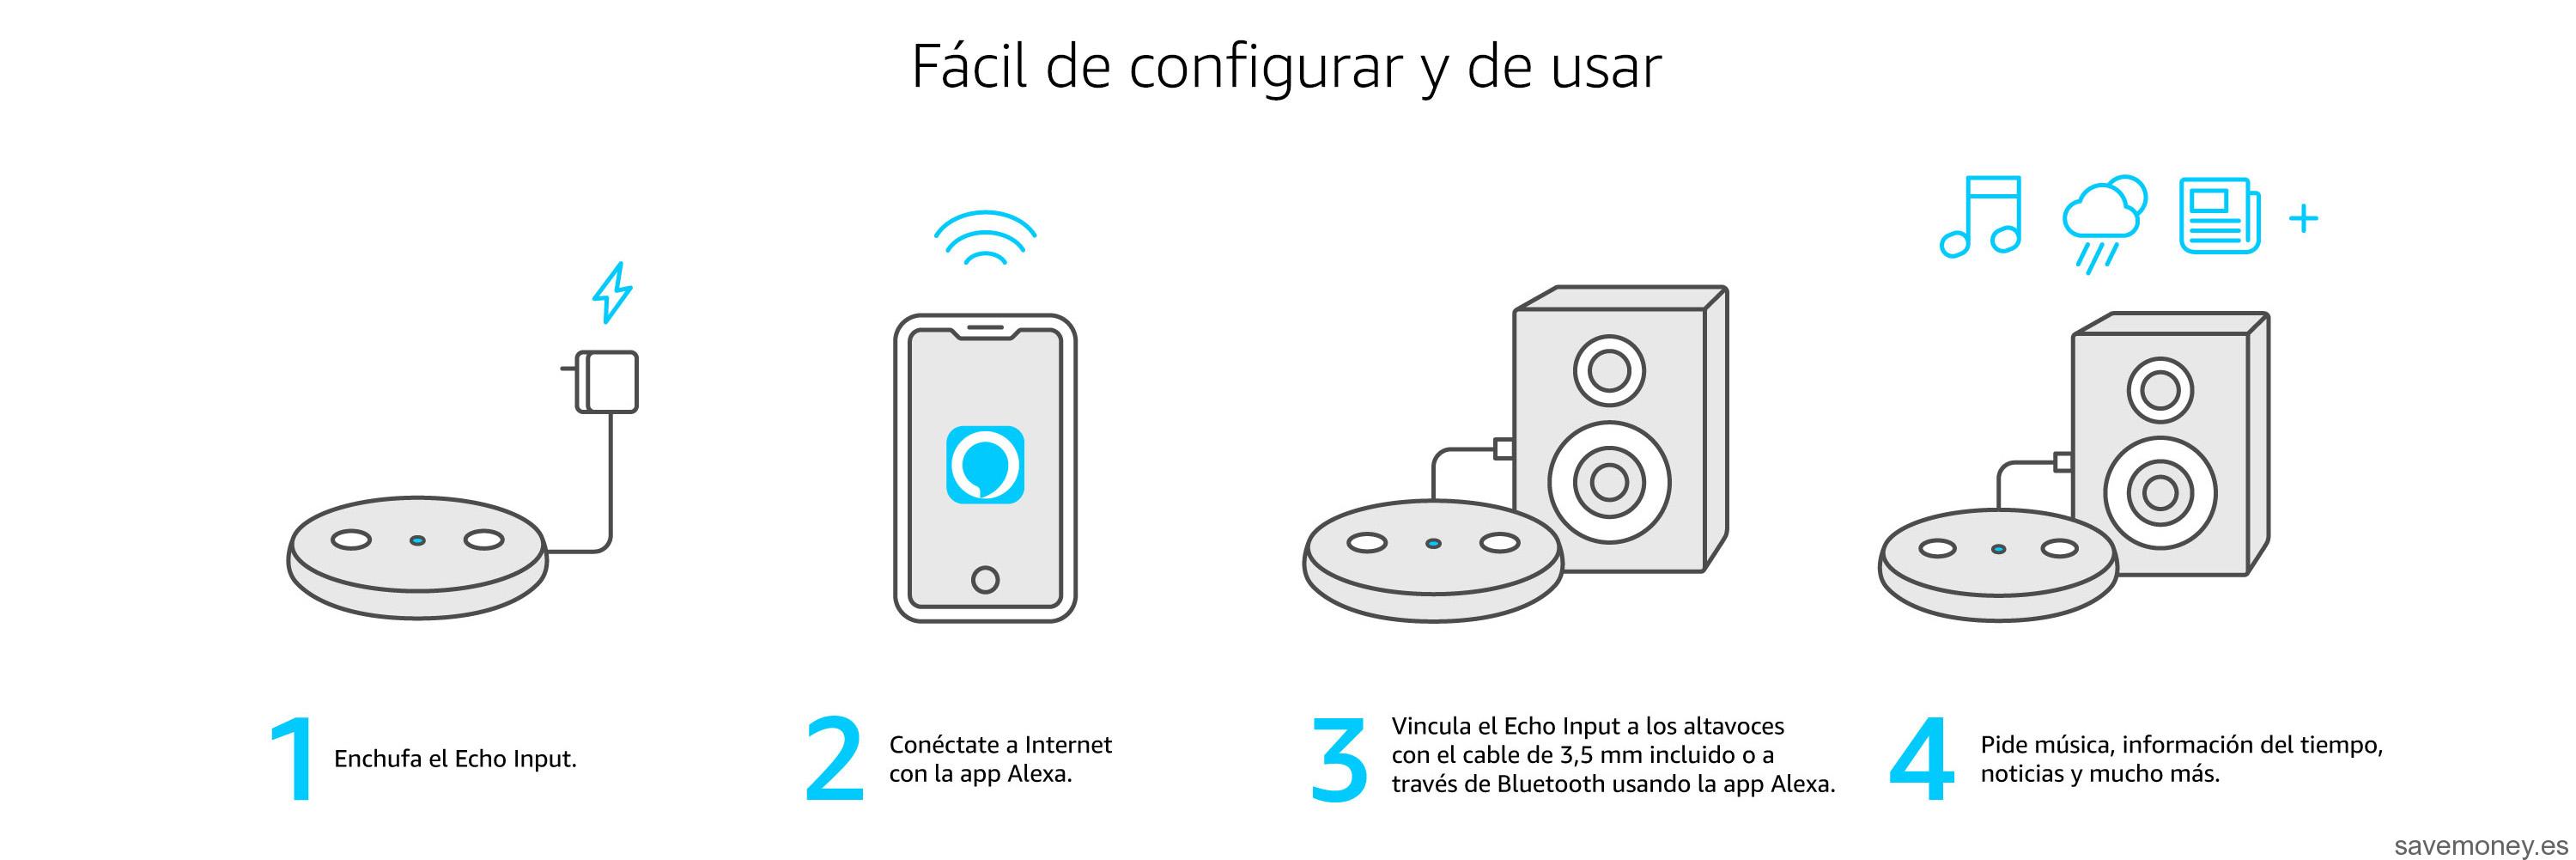 Echo Input: El Nuevo Dispositivo Inteligente de Amazon